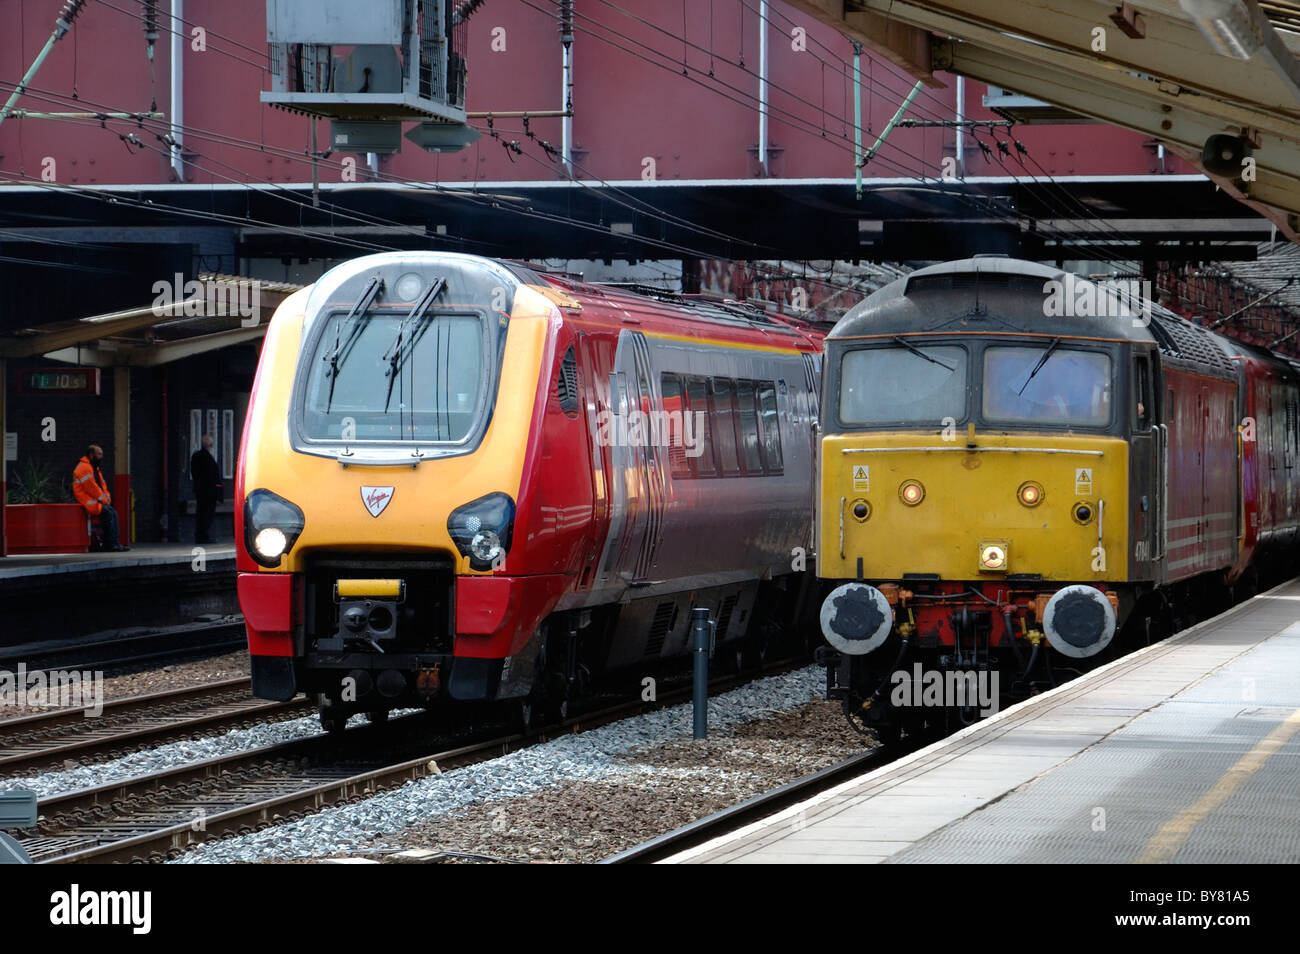 47841 type de pinceau 4 locomotive diesel et virgin trains pendulaires à la gare de Crewe angleterre uk Banque D'Images